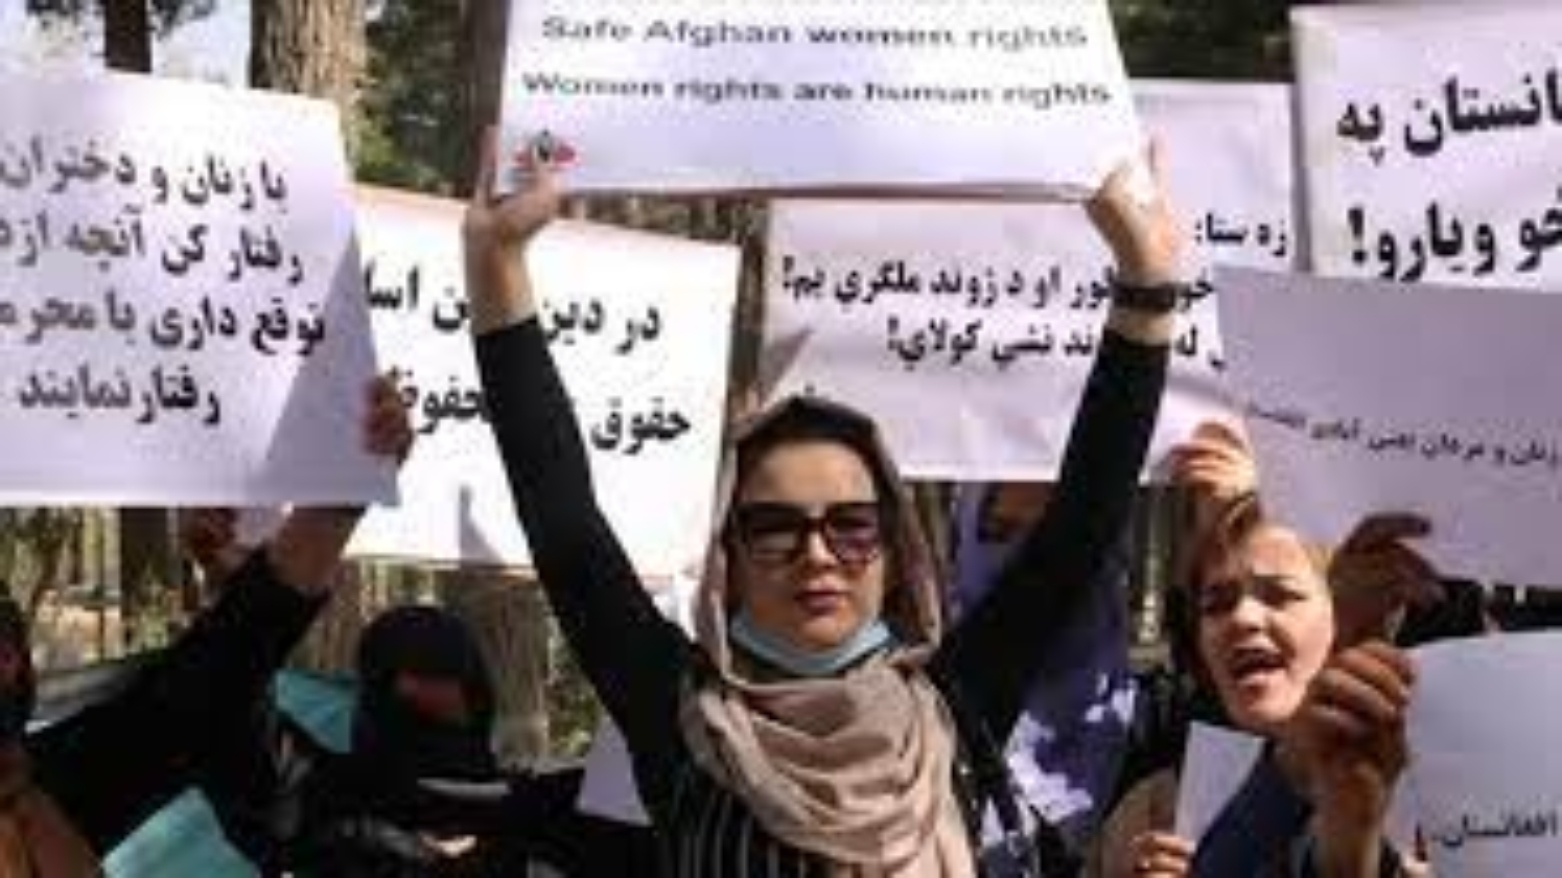 اعتراض به شکنجه در افغانسان